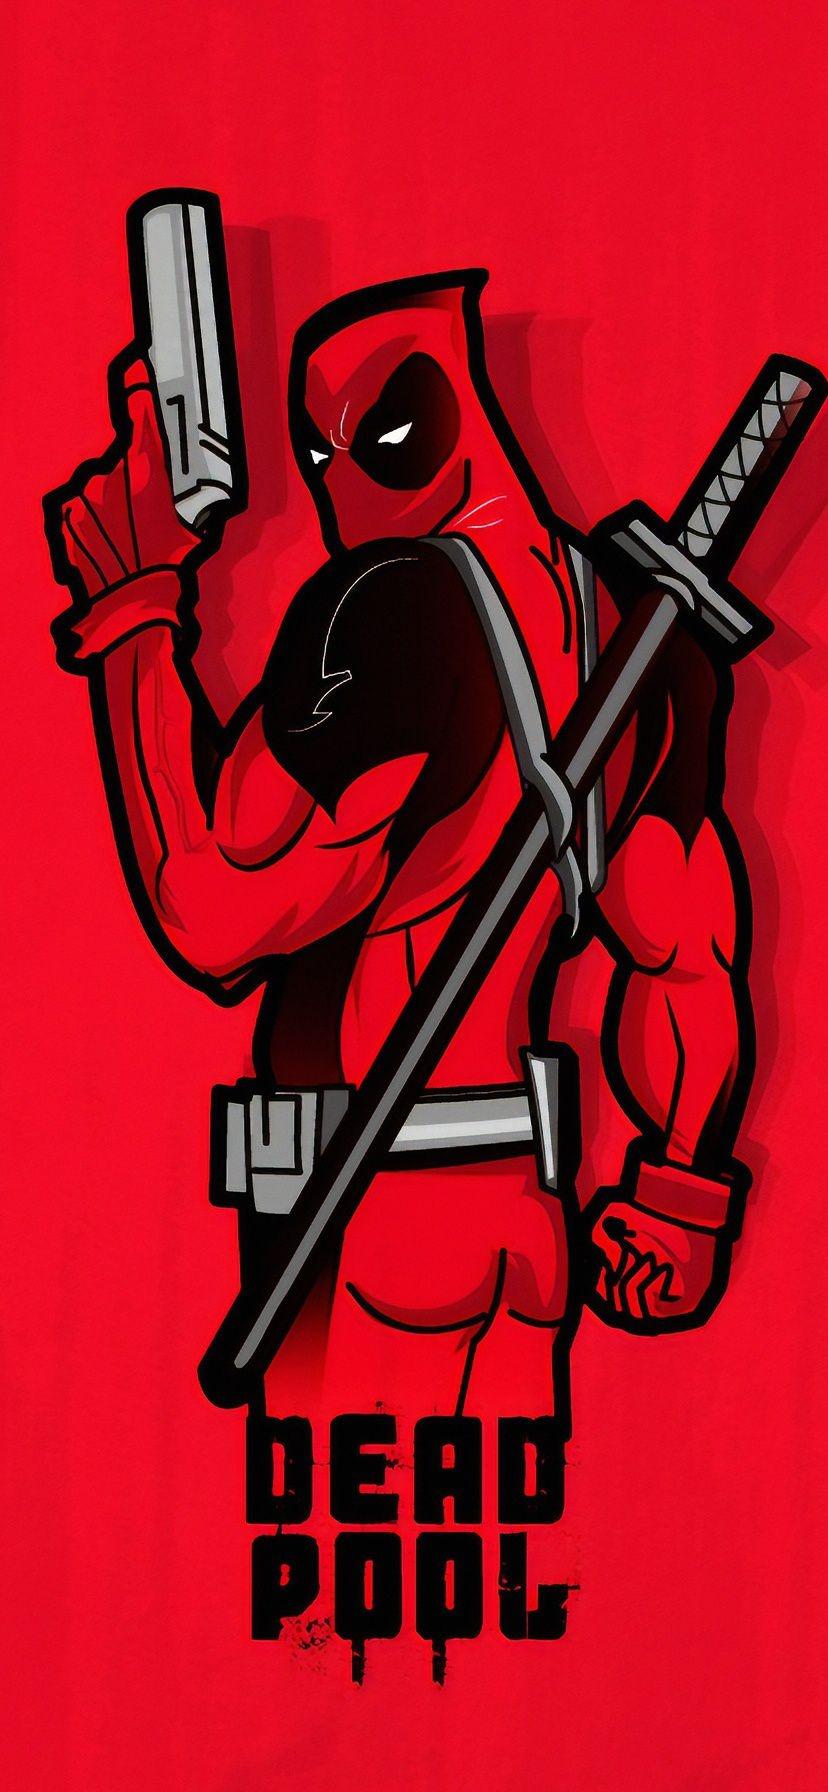 Deadpool Wallpaper Minimal Red 4k 2019 iPhone Xr x